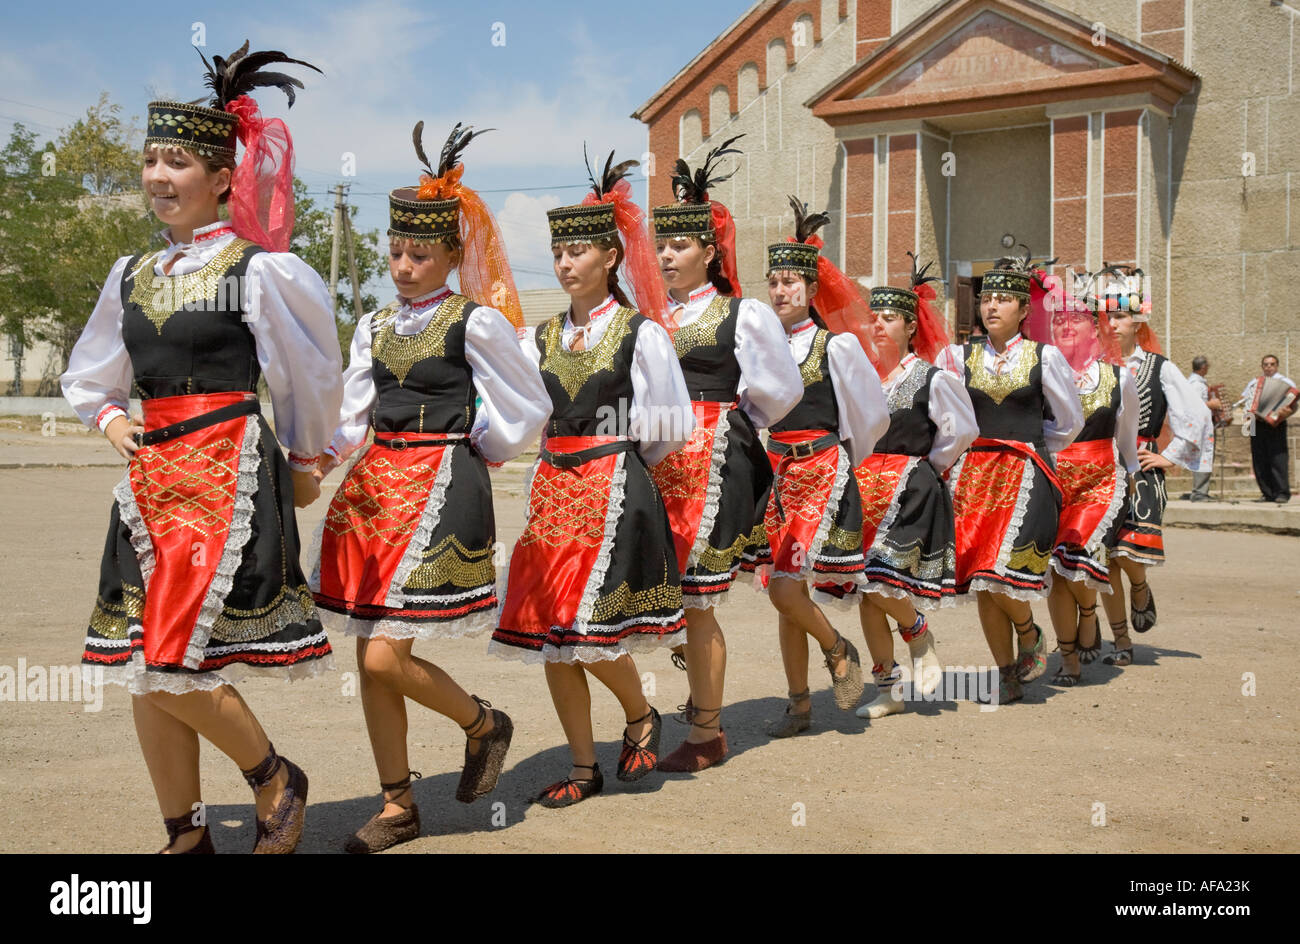 Junge Mädchen in traditionellen ukrainischen Kostümen tanzen vor dem Stadthaus in Plotzk / Ukraine Stockfoto